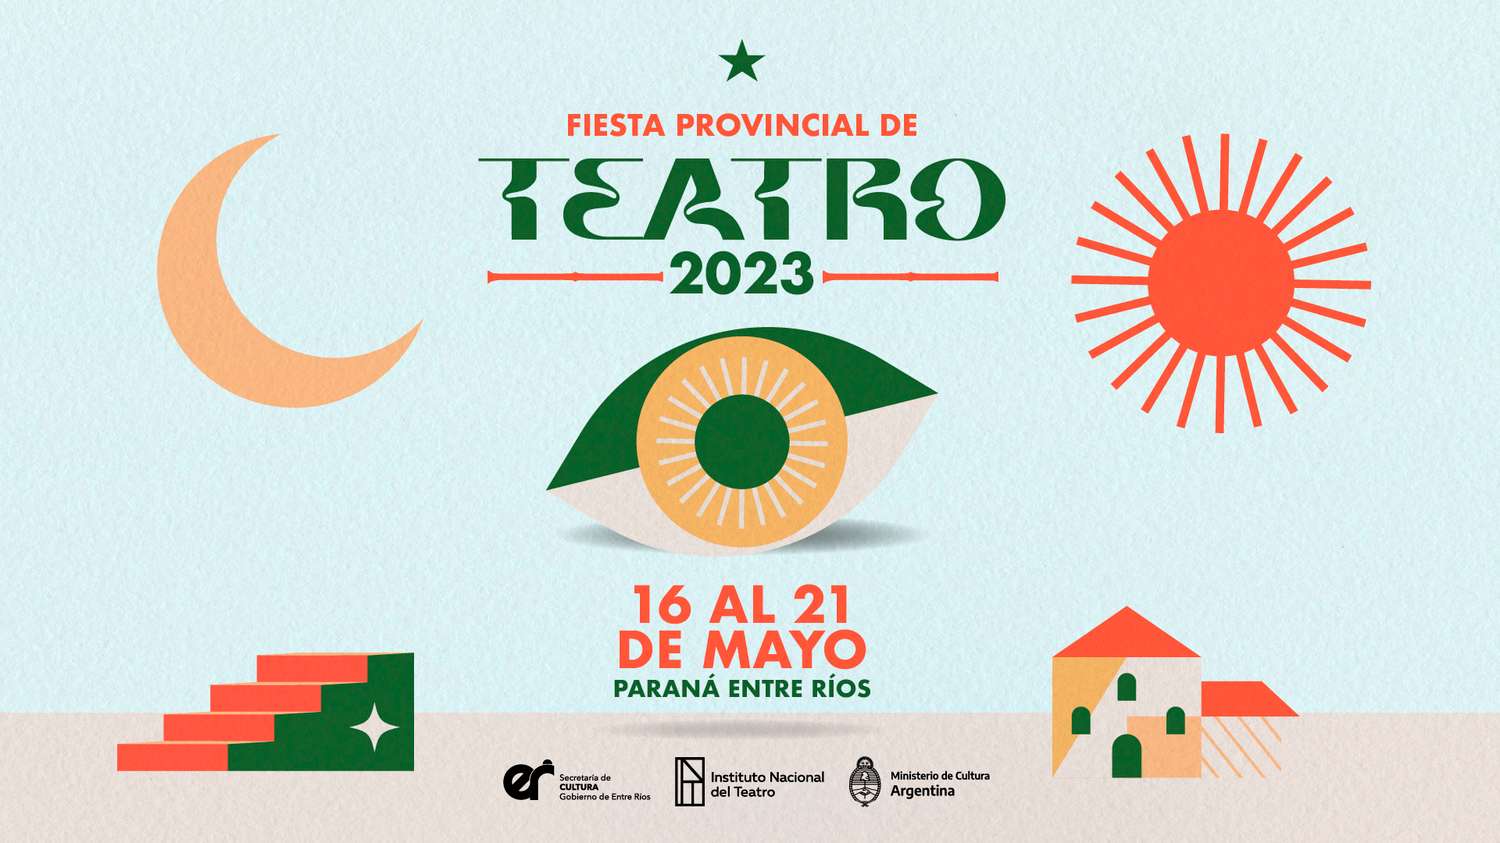 Paraná será sede de una nueva edición de la Fiesta Provincial de Teatro – Entre Ríos 2023